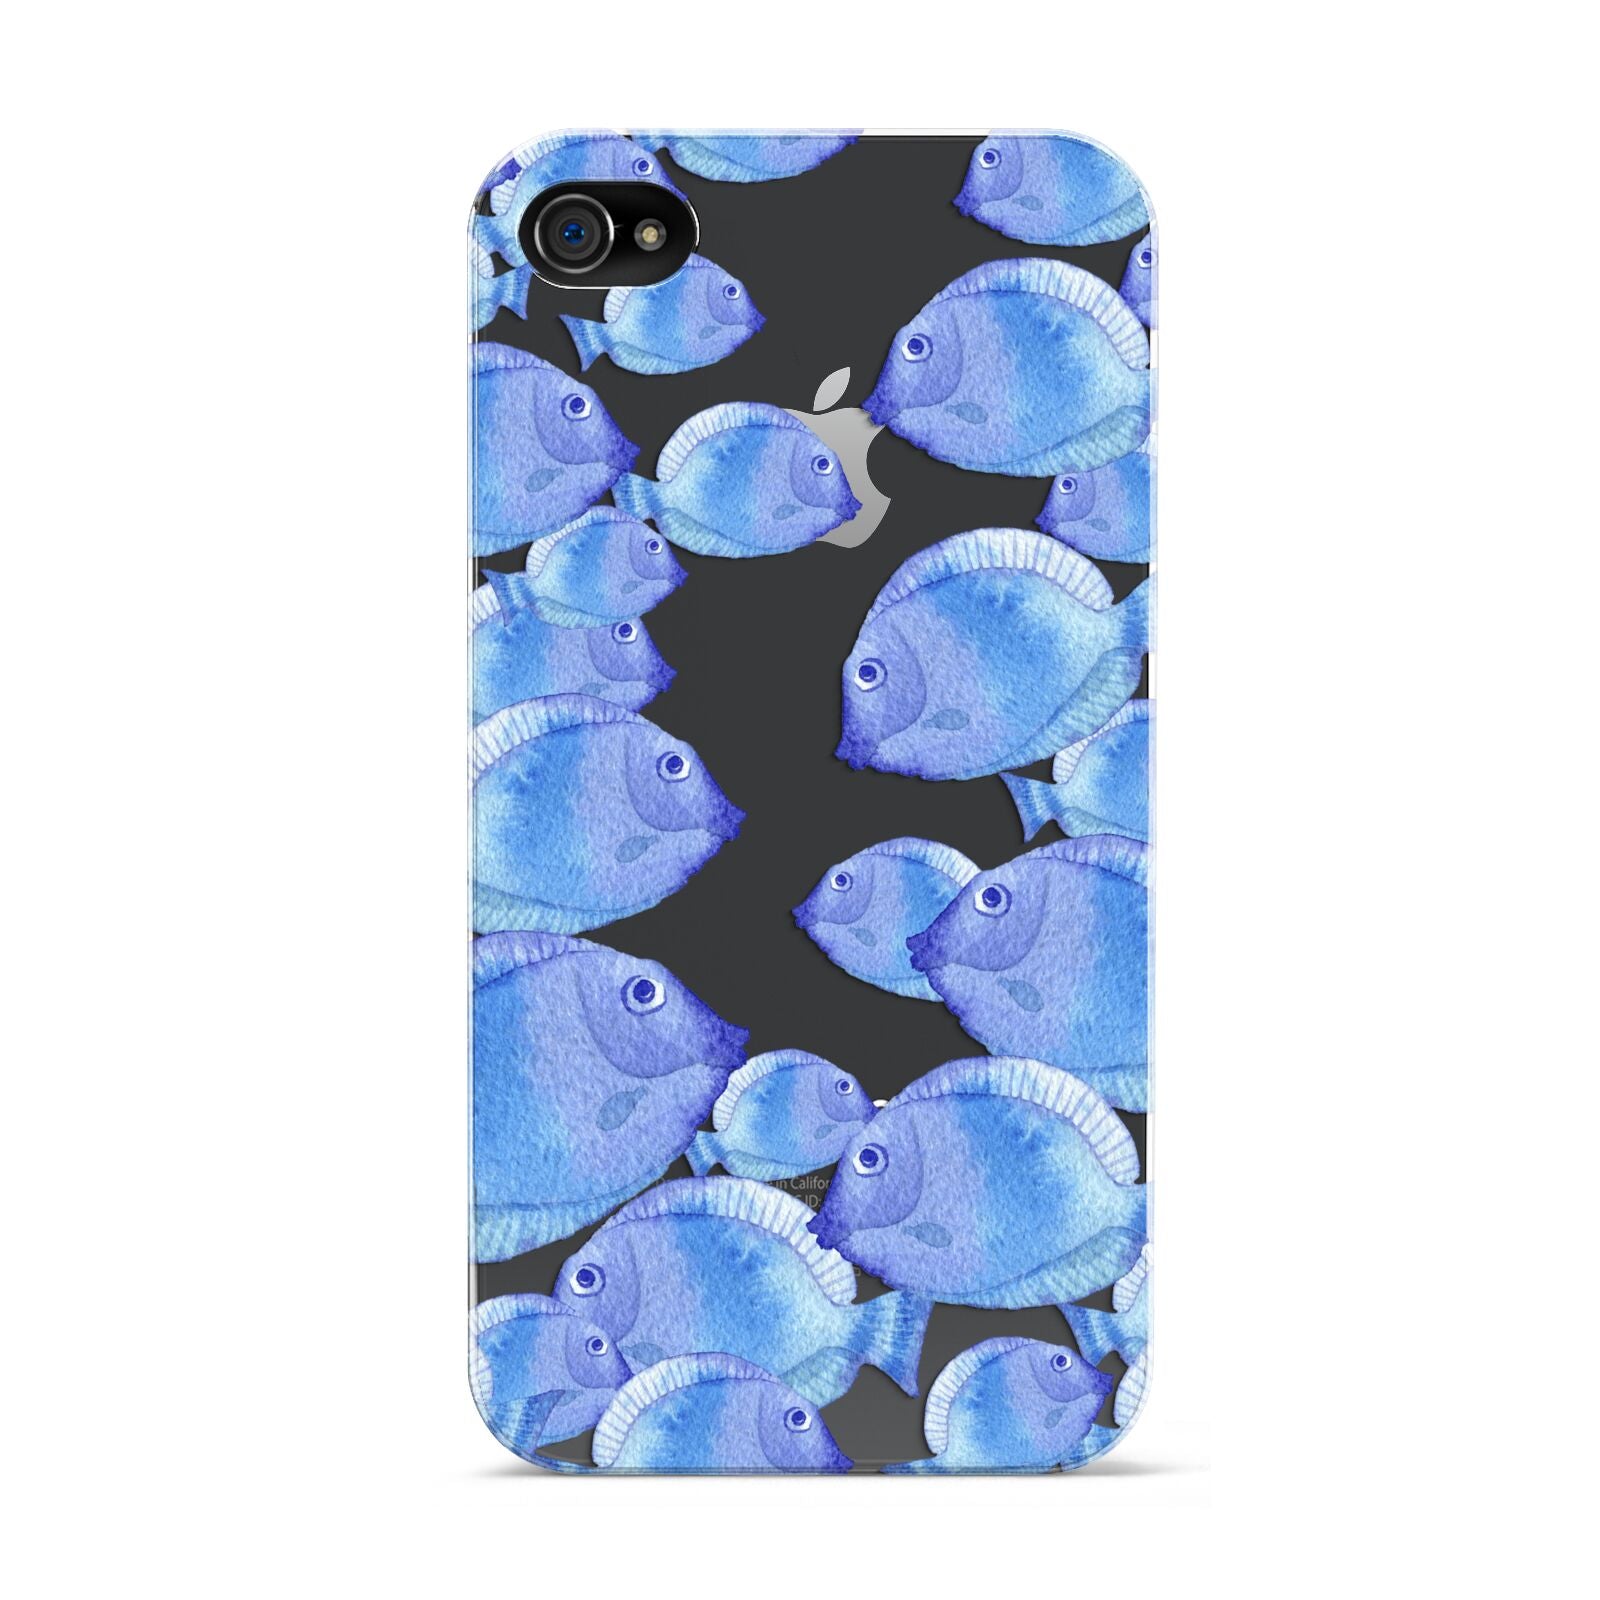 Fish Apple iPhone 4s Case